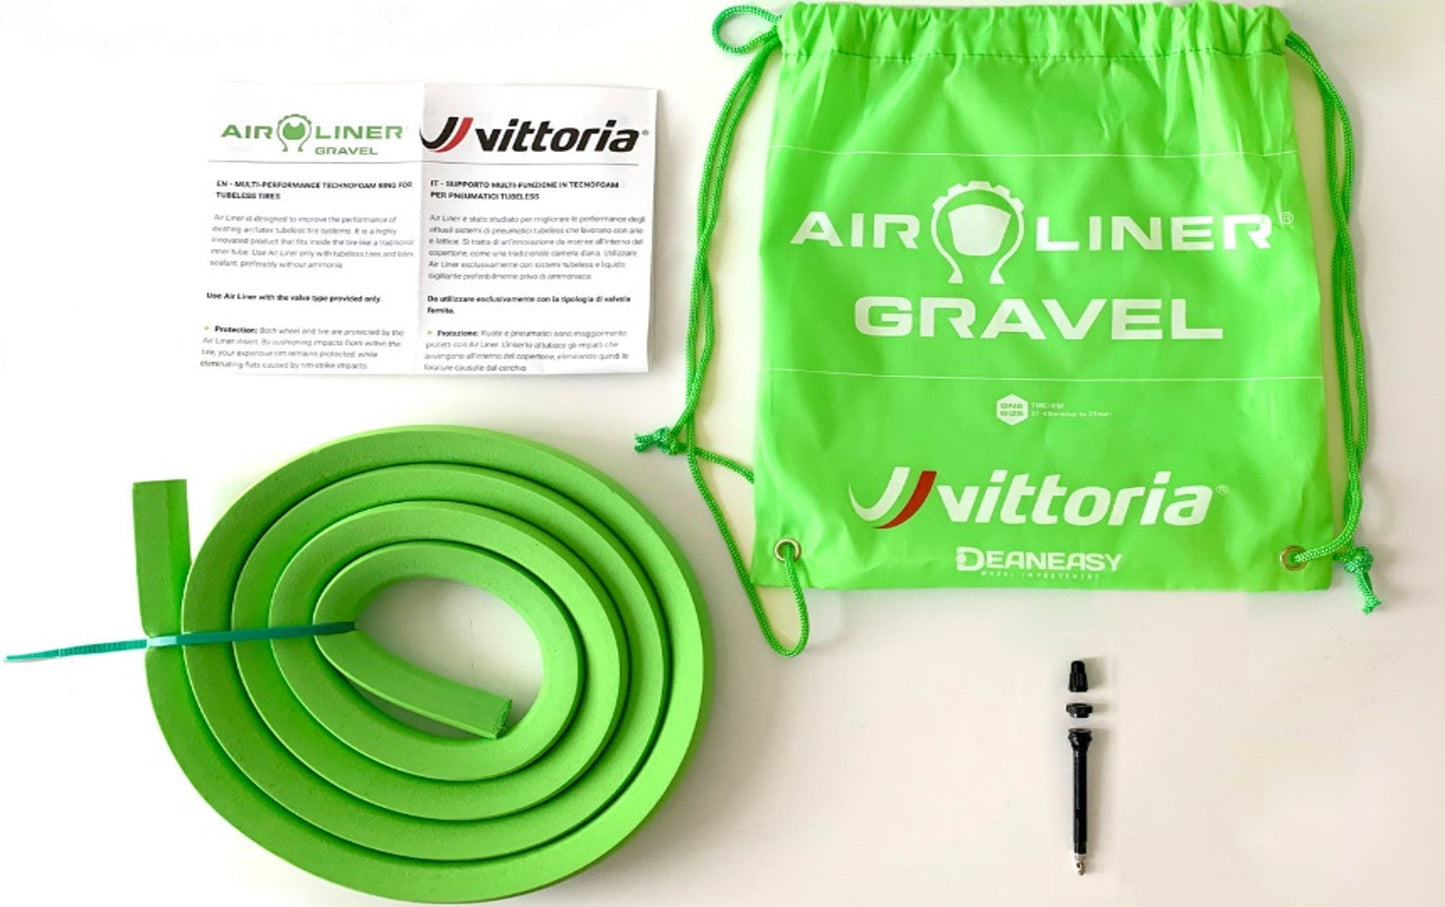 VITTORIA AIR-LINER 泡棉管狀嵌入物 (GRAVEL 胎用) / VITTORIA AIR-LINER TIRE INSERT-FOR GRAVEL